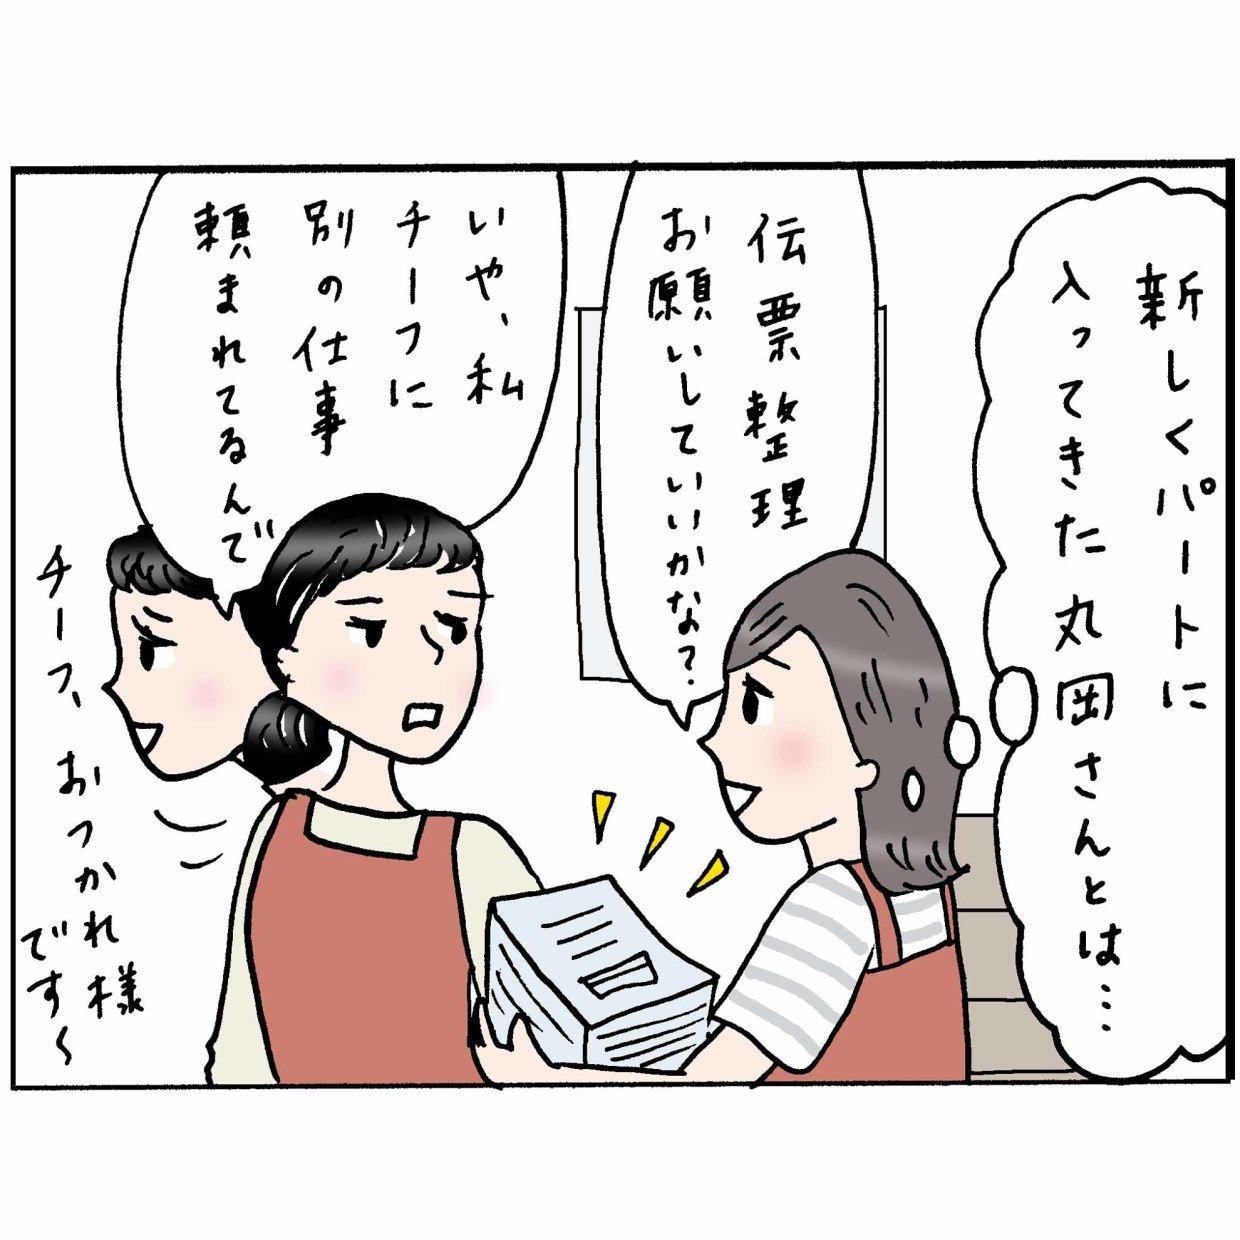  4コマ漫画 “佐藤くみ子”の日常 